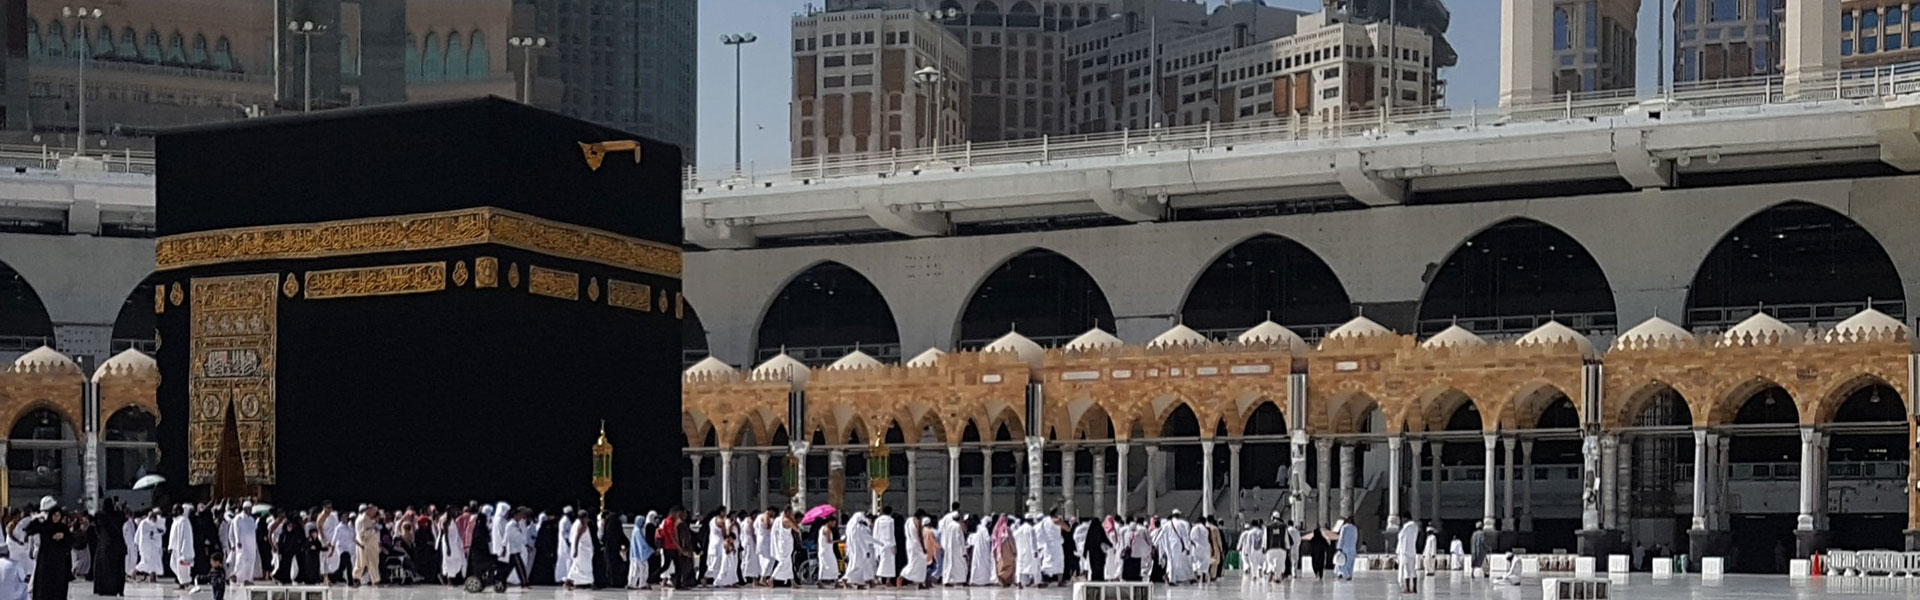 Al Haram Kaaba